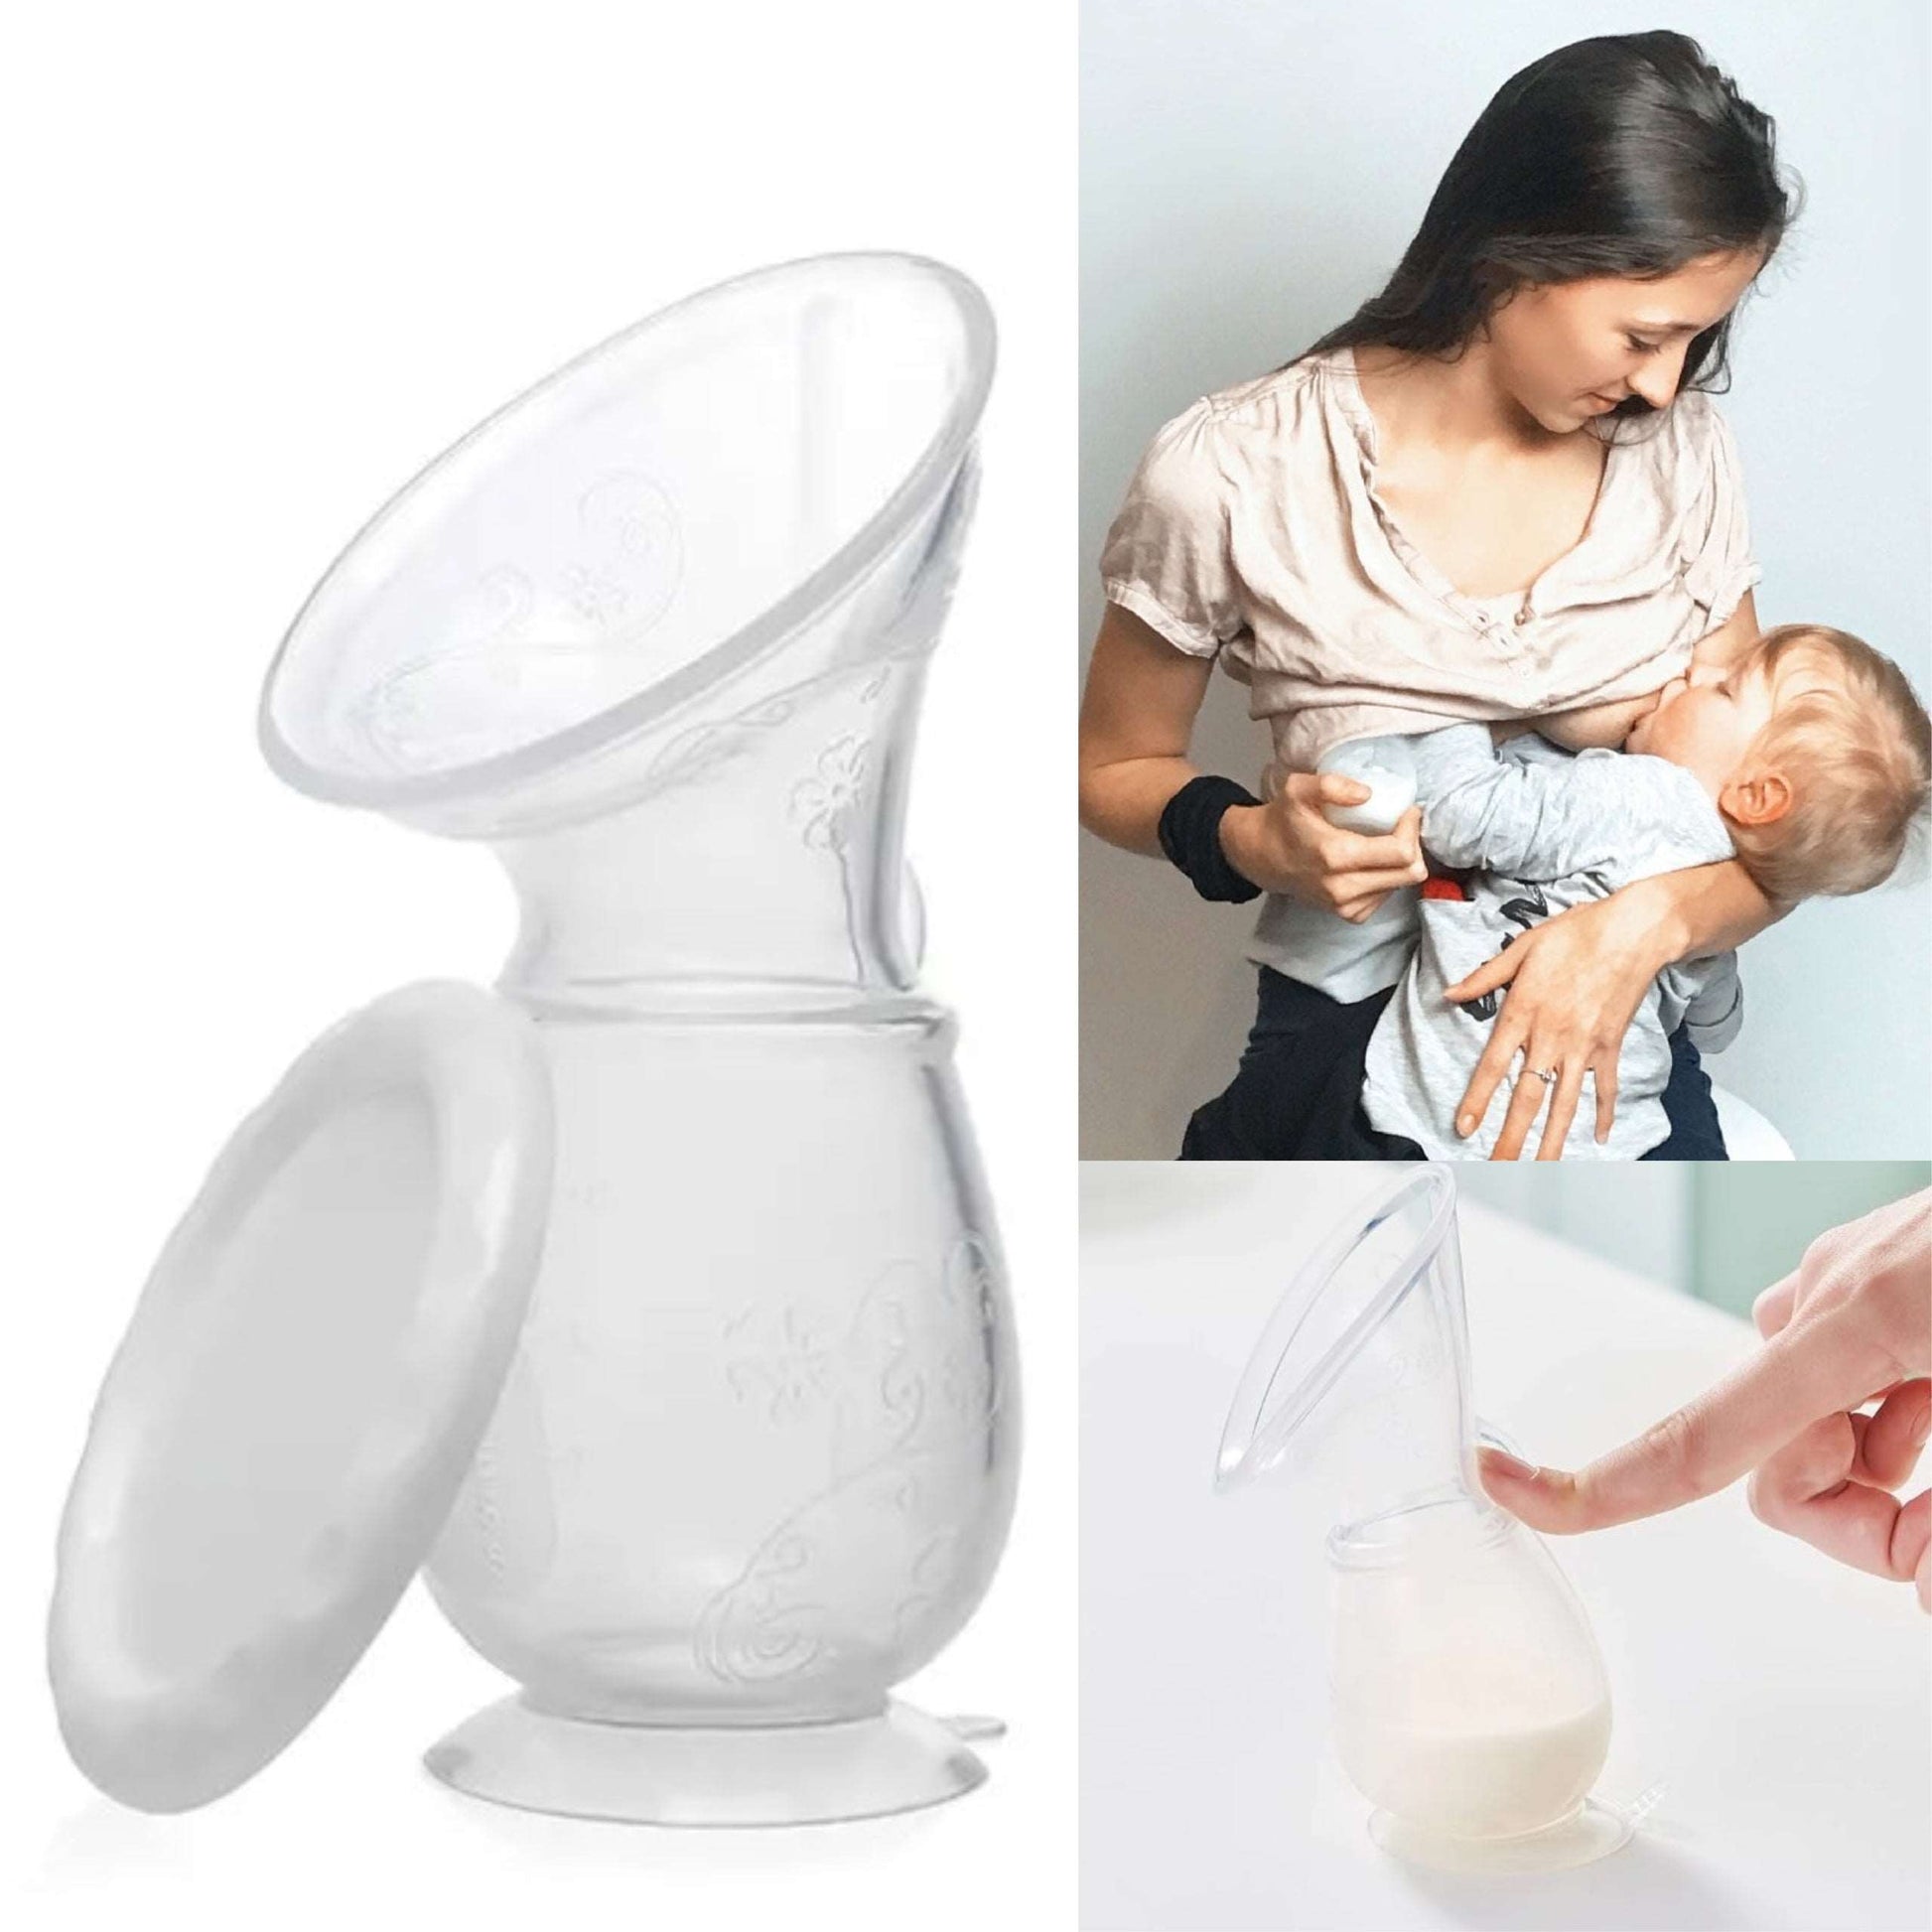 Manual Silicone Breast Milk Collector & Pump - GAMAL Manual Silicone Breast Pump - 110ml